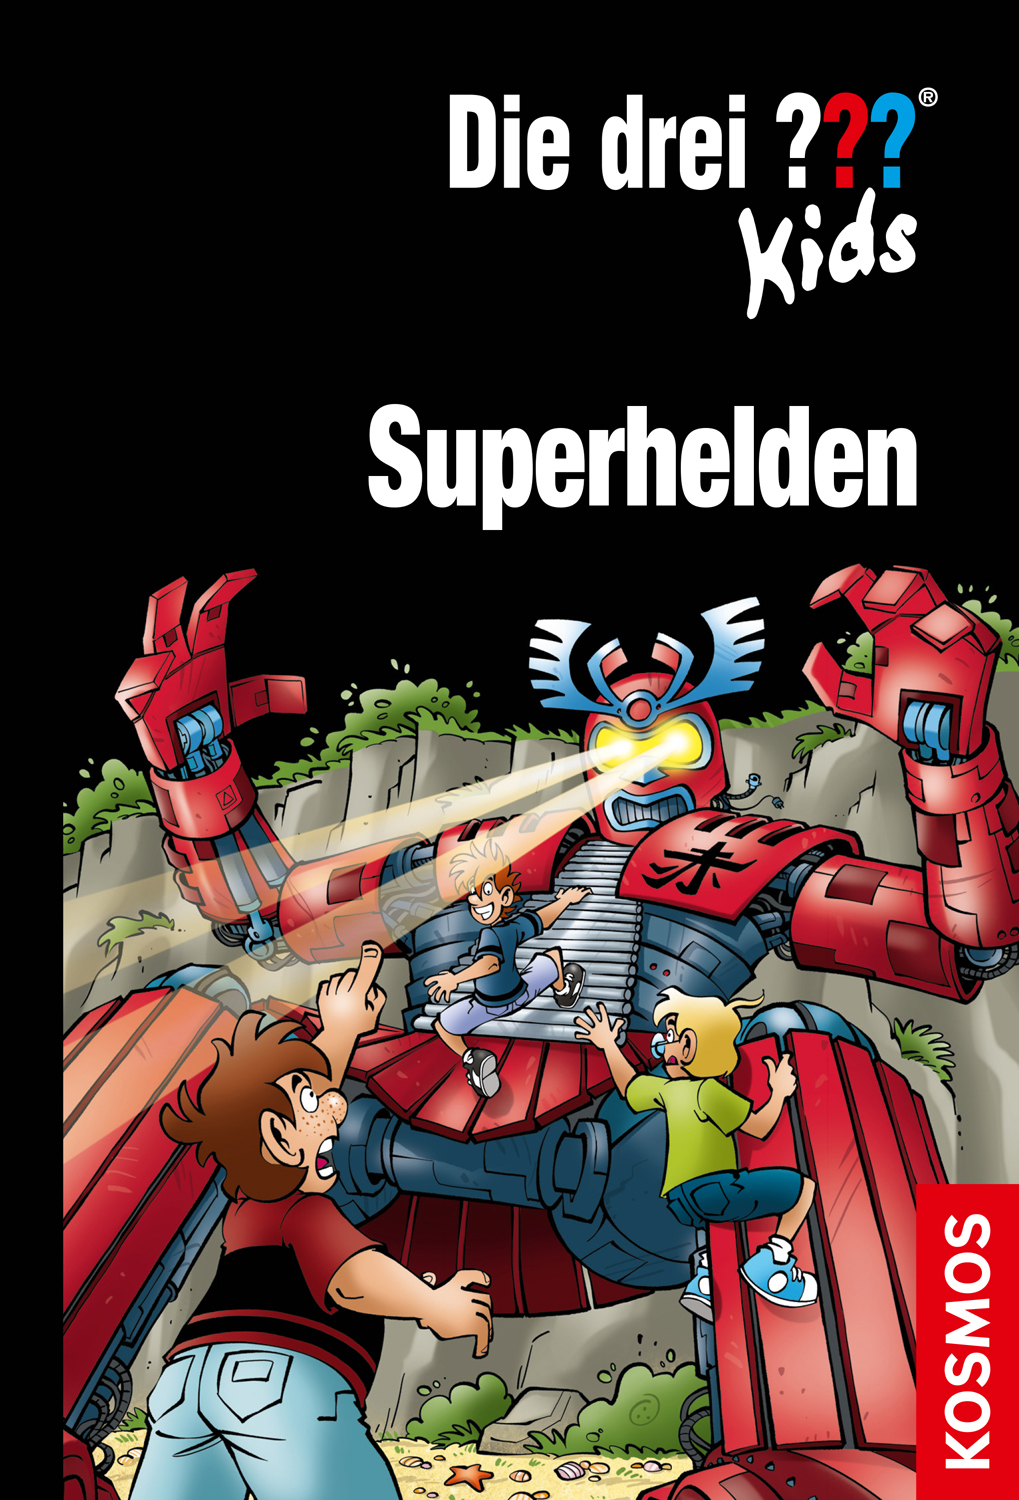 Die Drei ??? (Fragezeichen) Kids, Buch-Band 500: Die drei ??? Kids, Superhelden